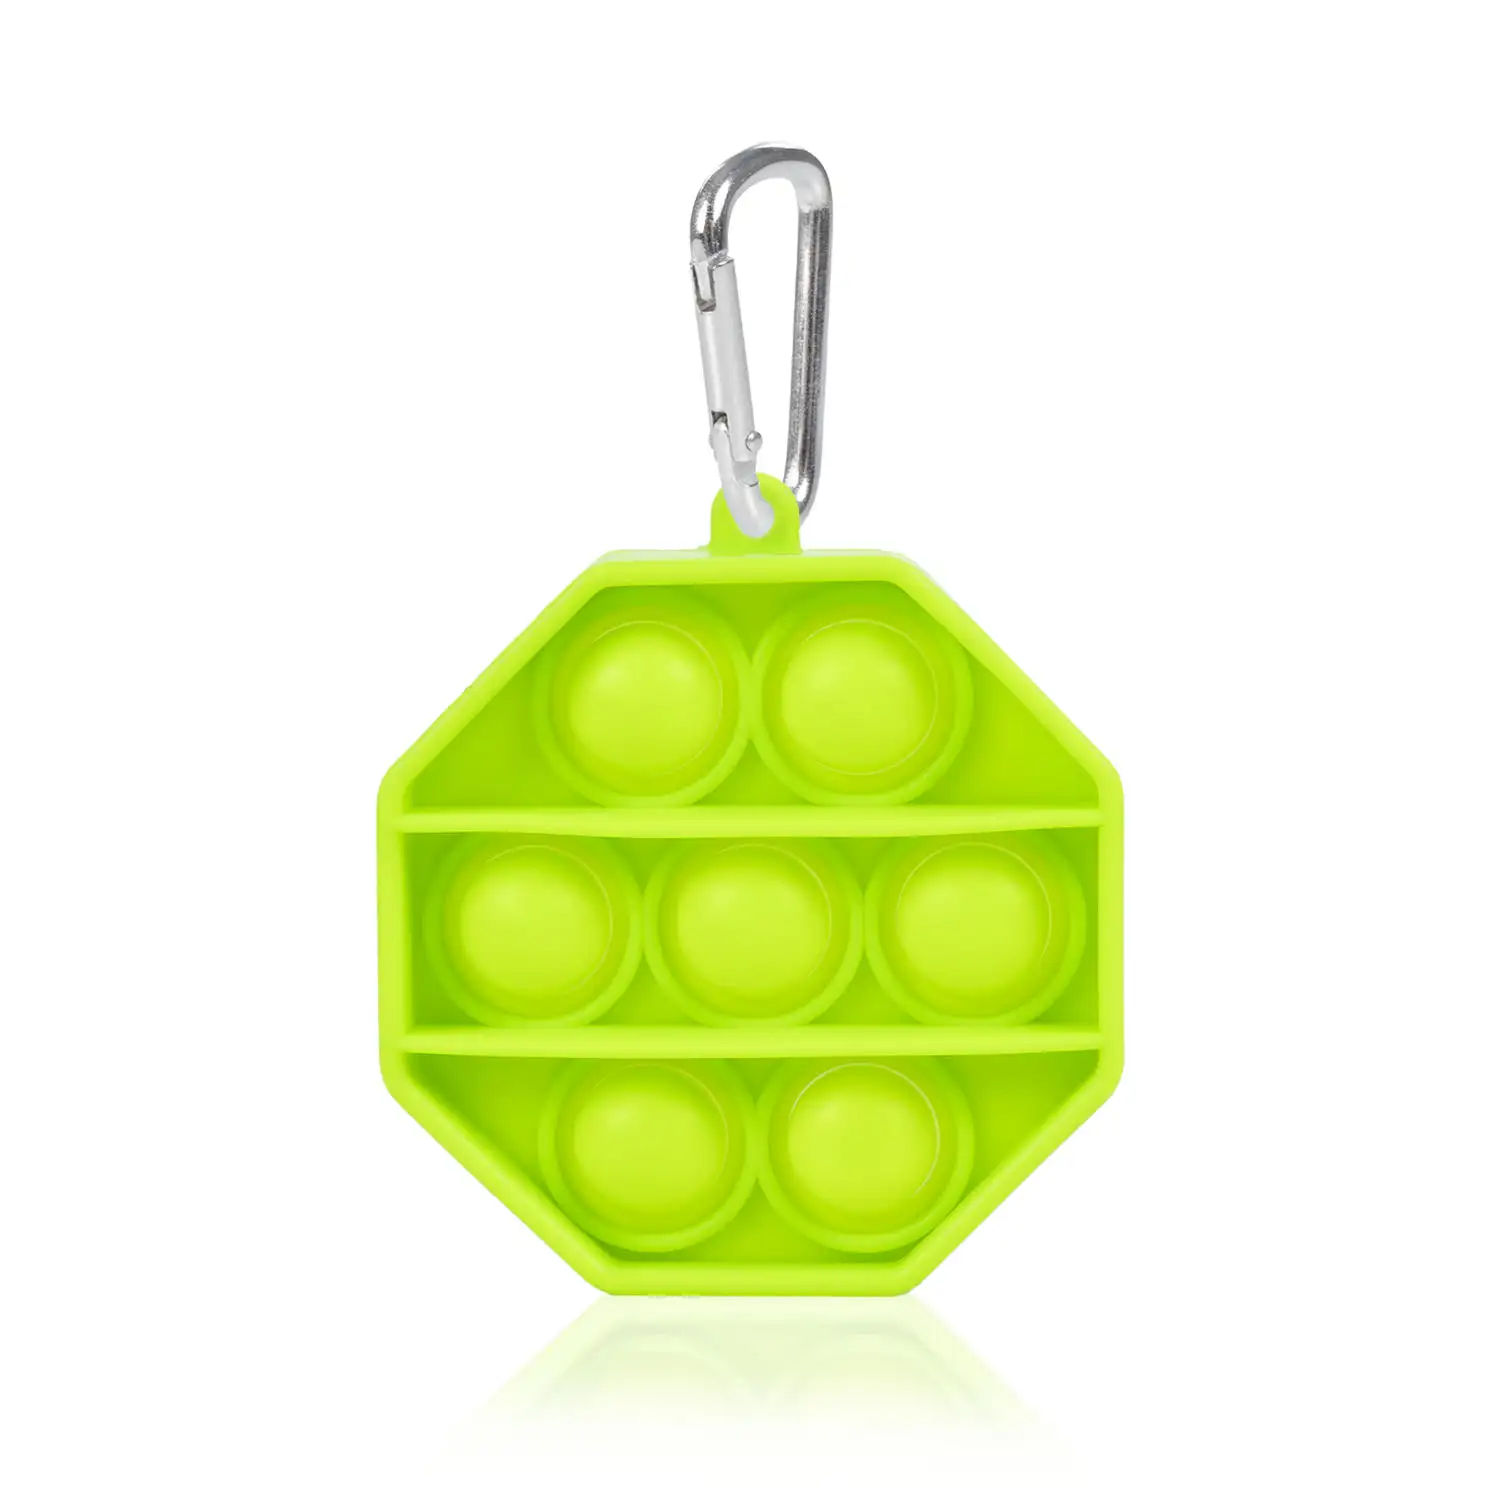 Mini Bubble Pop It juguete sensitivo desestresante, burbujas de silicona para apretar y pulsar. Diseño octogonal con llavero.